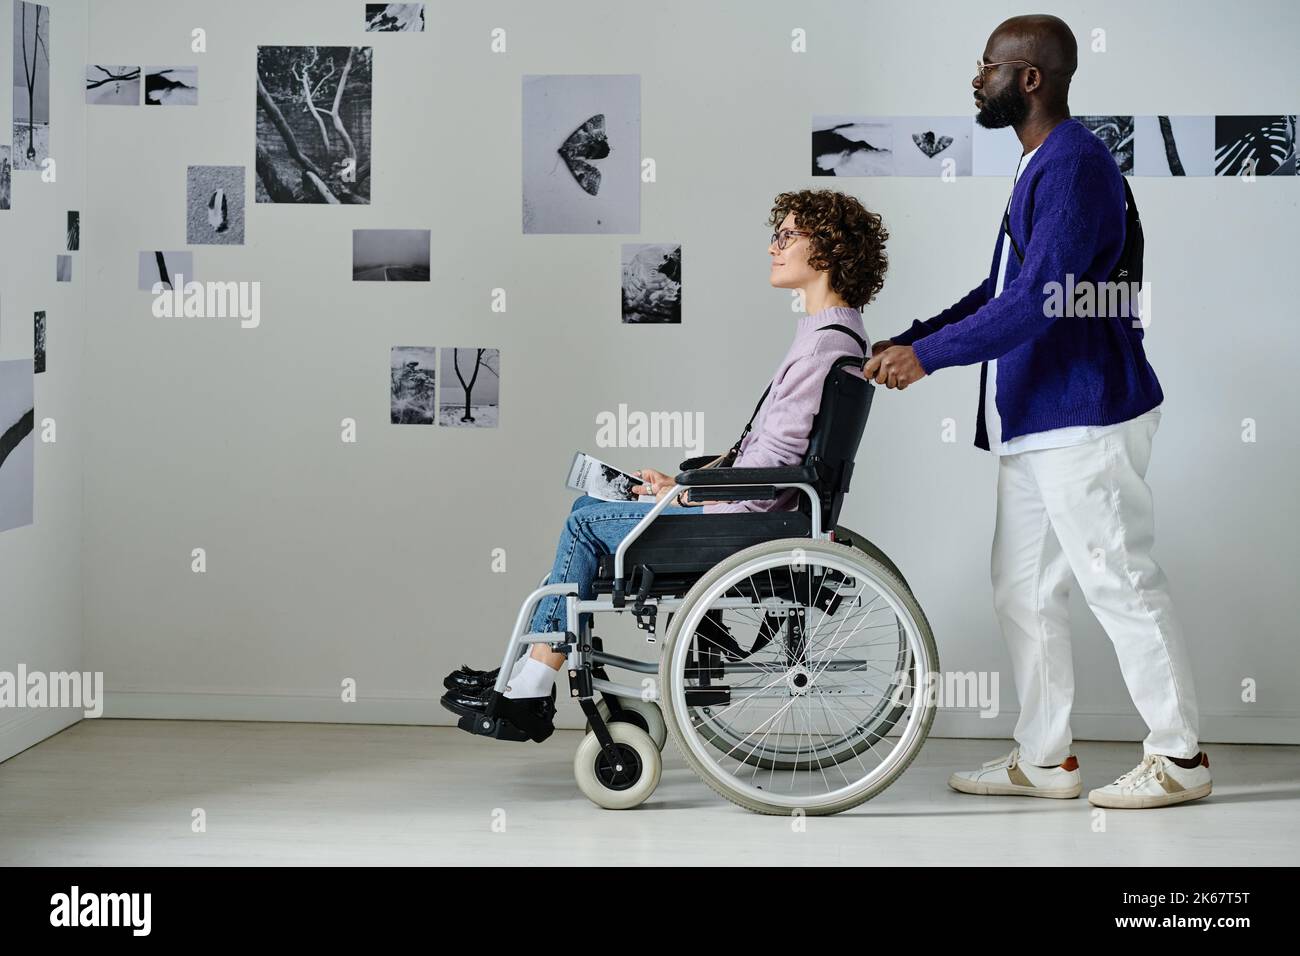 Coppia multietnica con disabilità visitando la galleria d'arte moderna Foto Stock